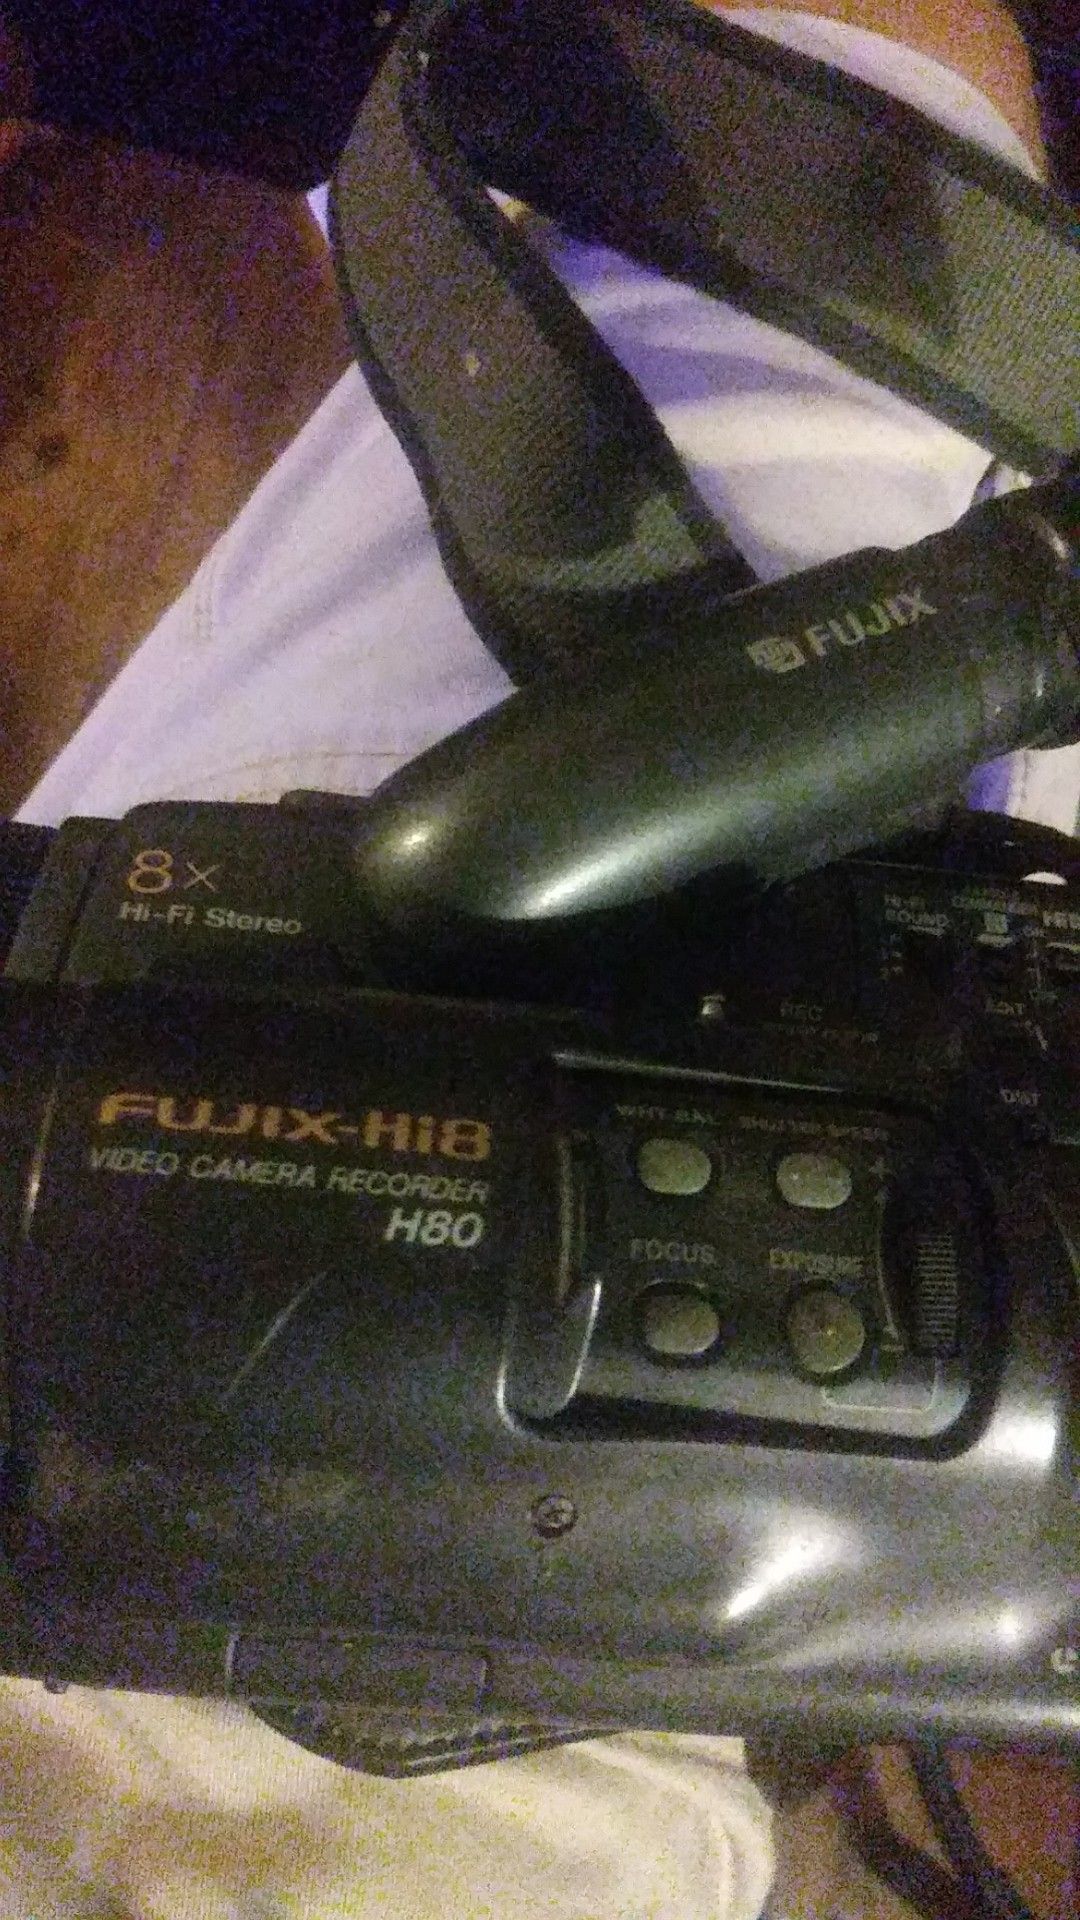 Fujix Hi8 H80 video camcorder